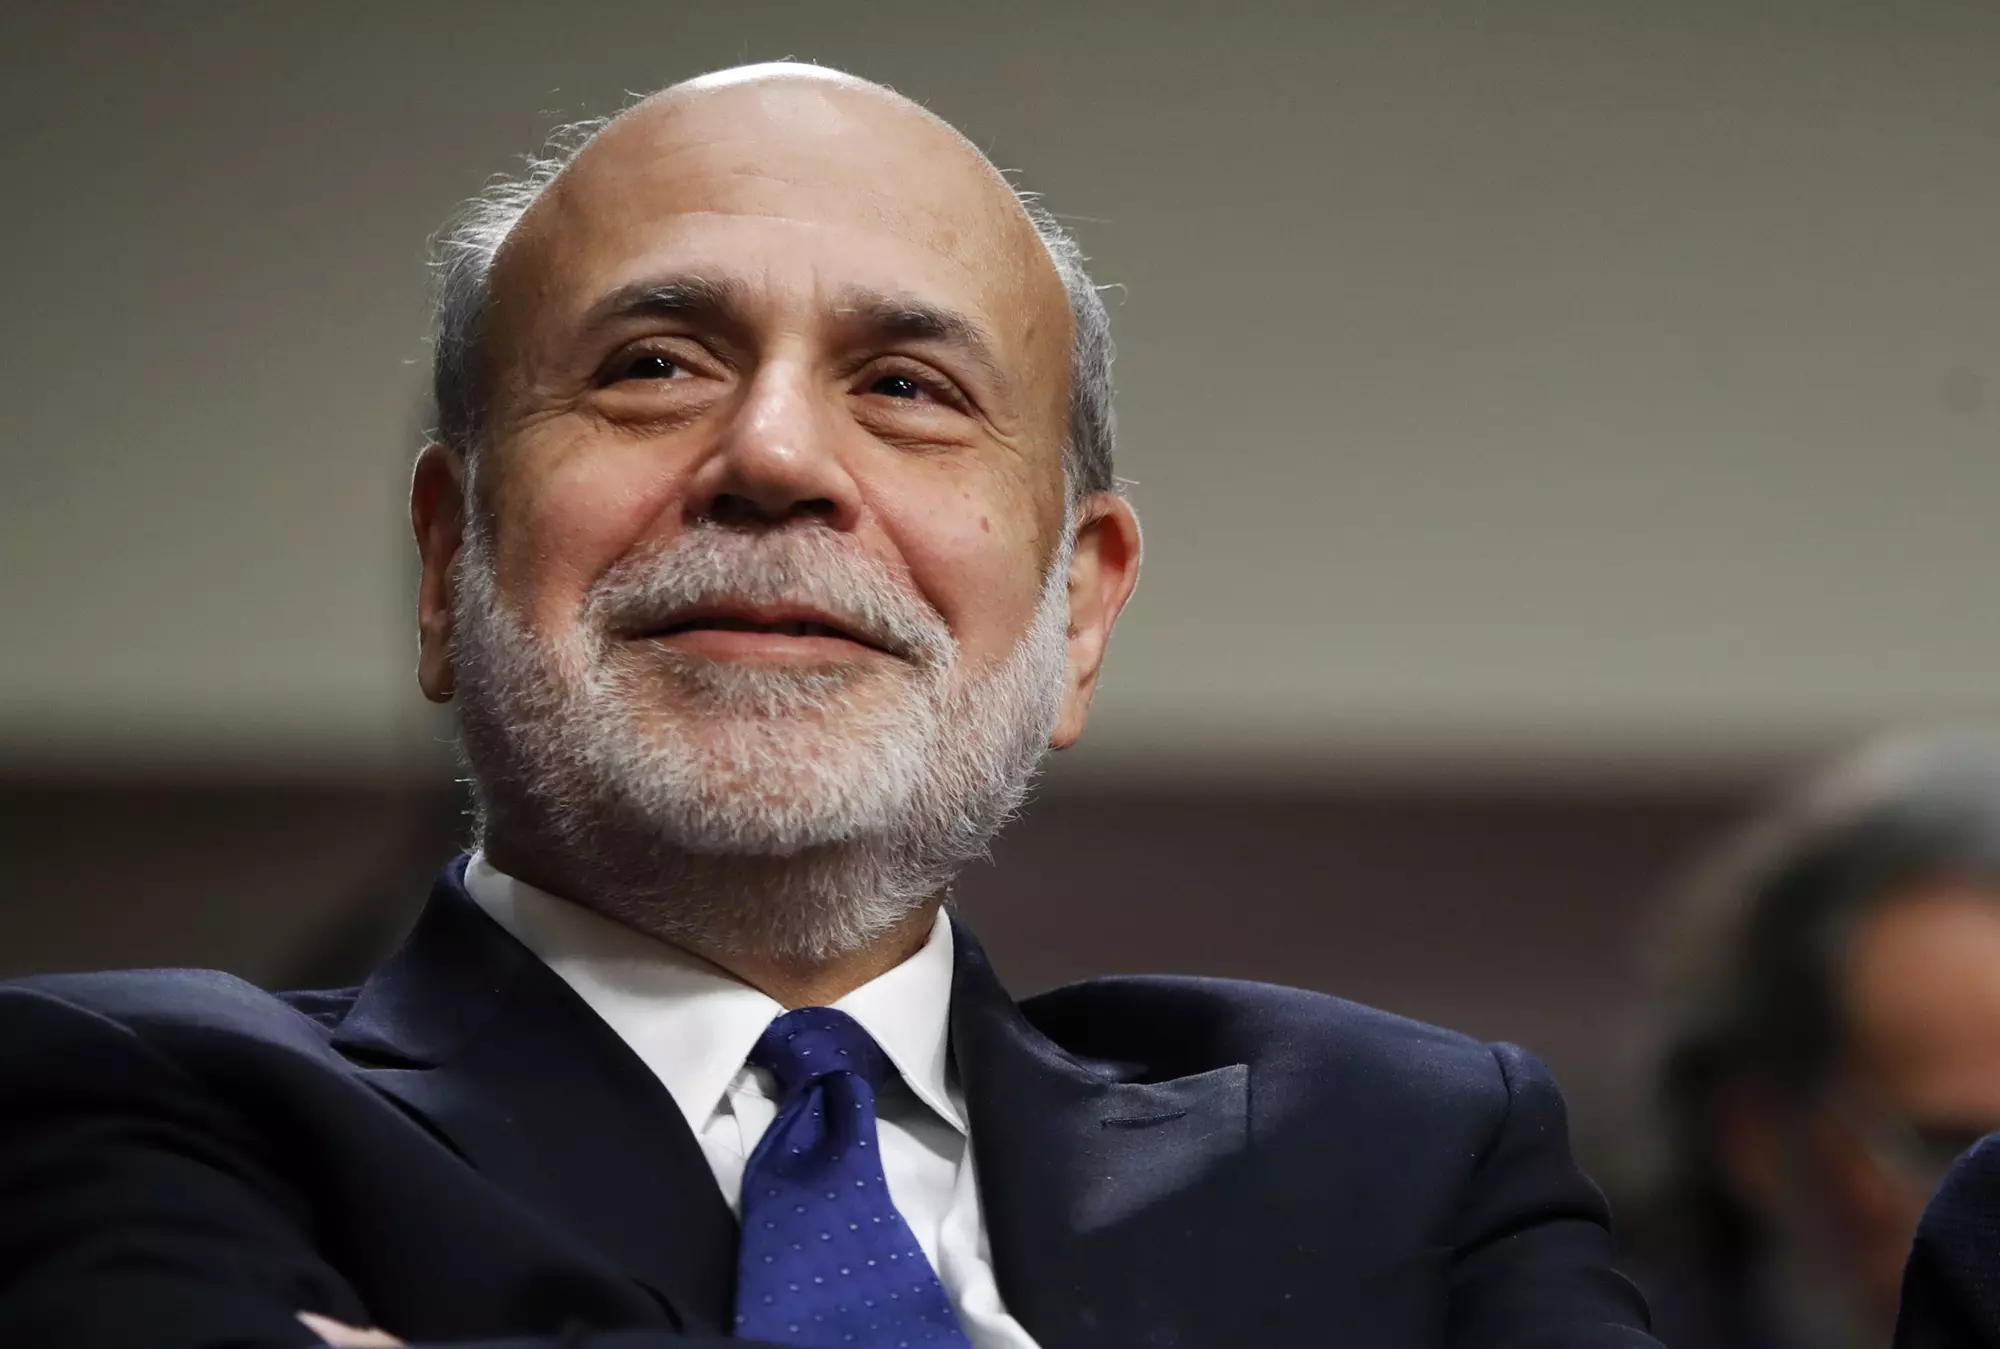 بن برنانکی Ben Bernanke